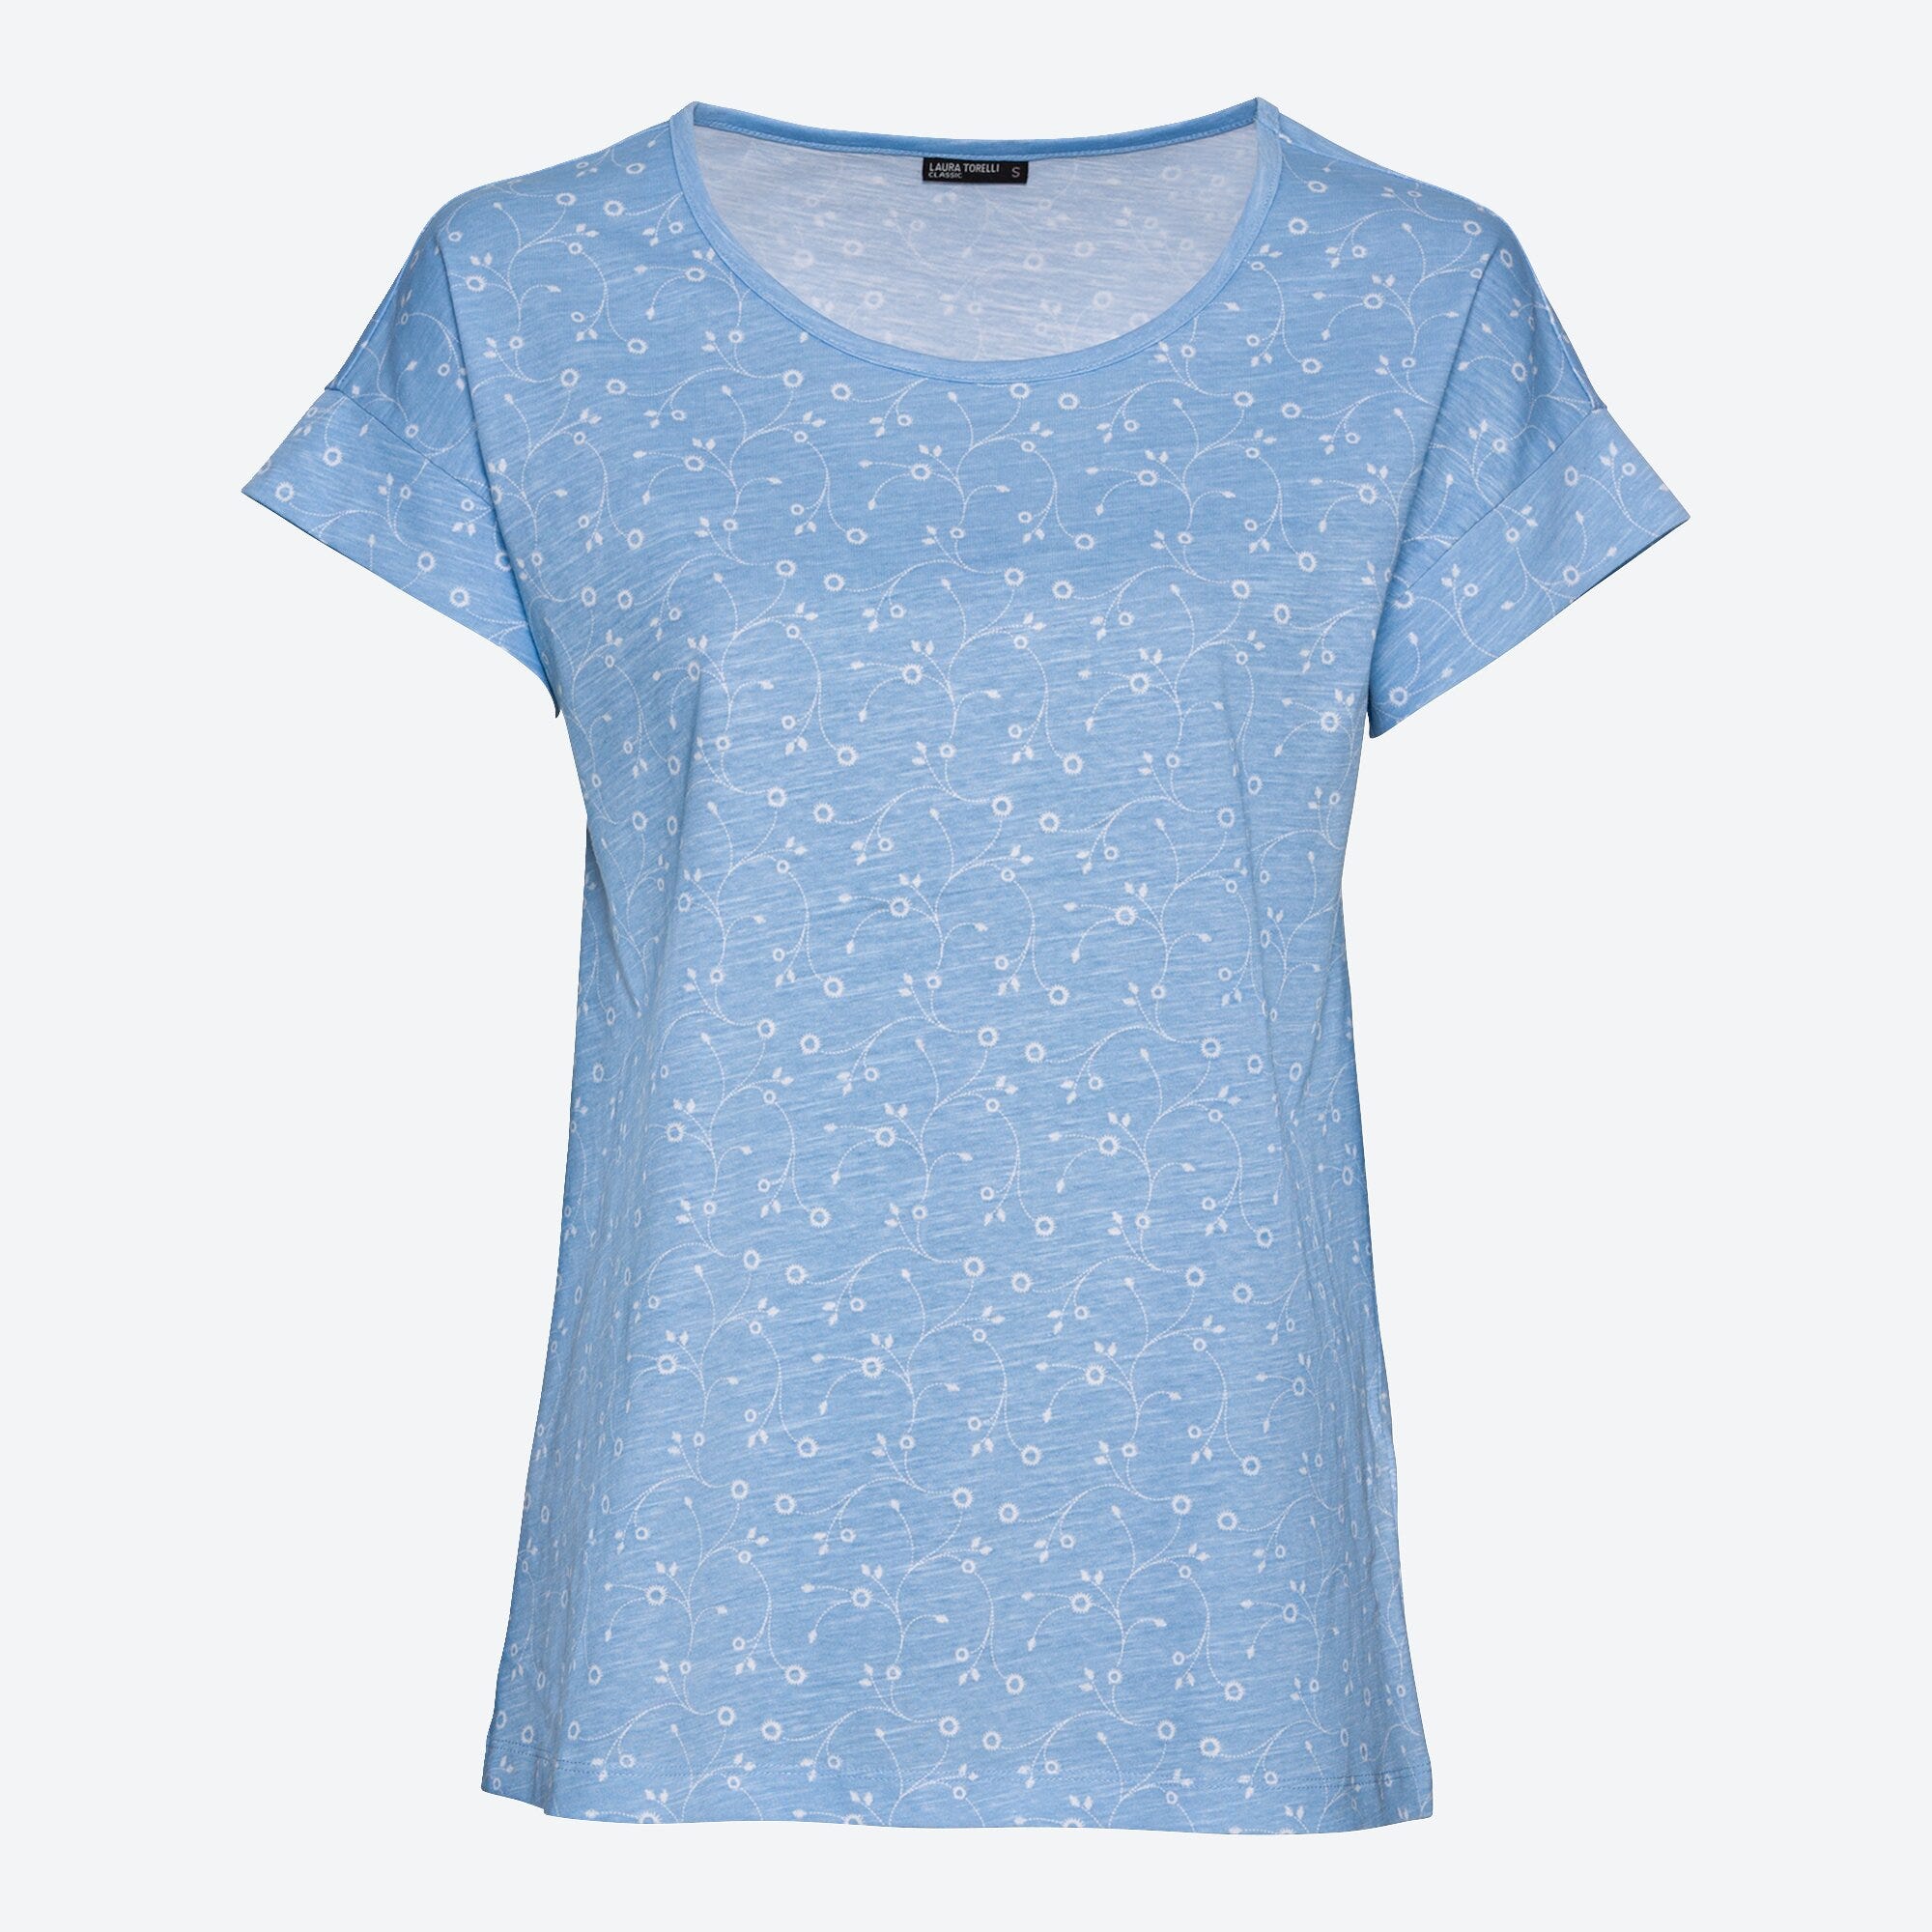 Damen-T-Shirt mit hübschem Muster